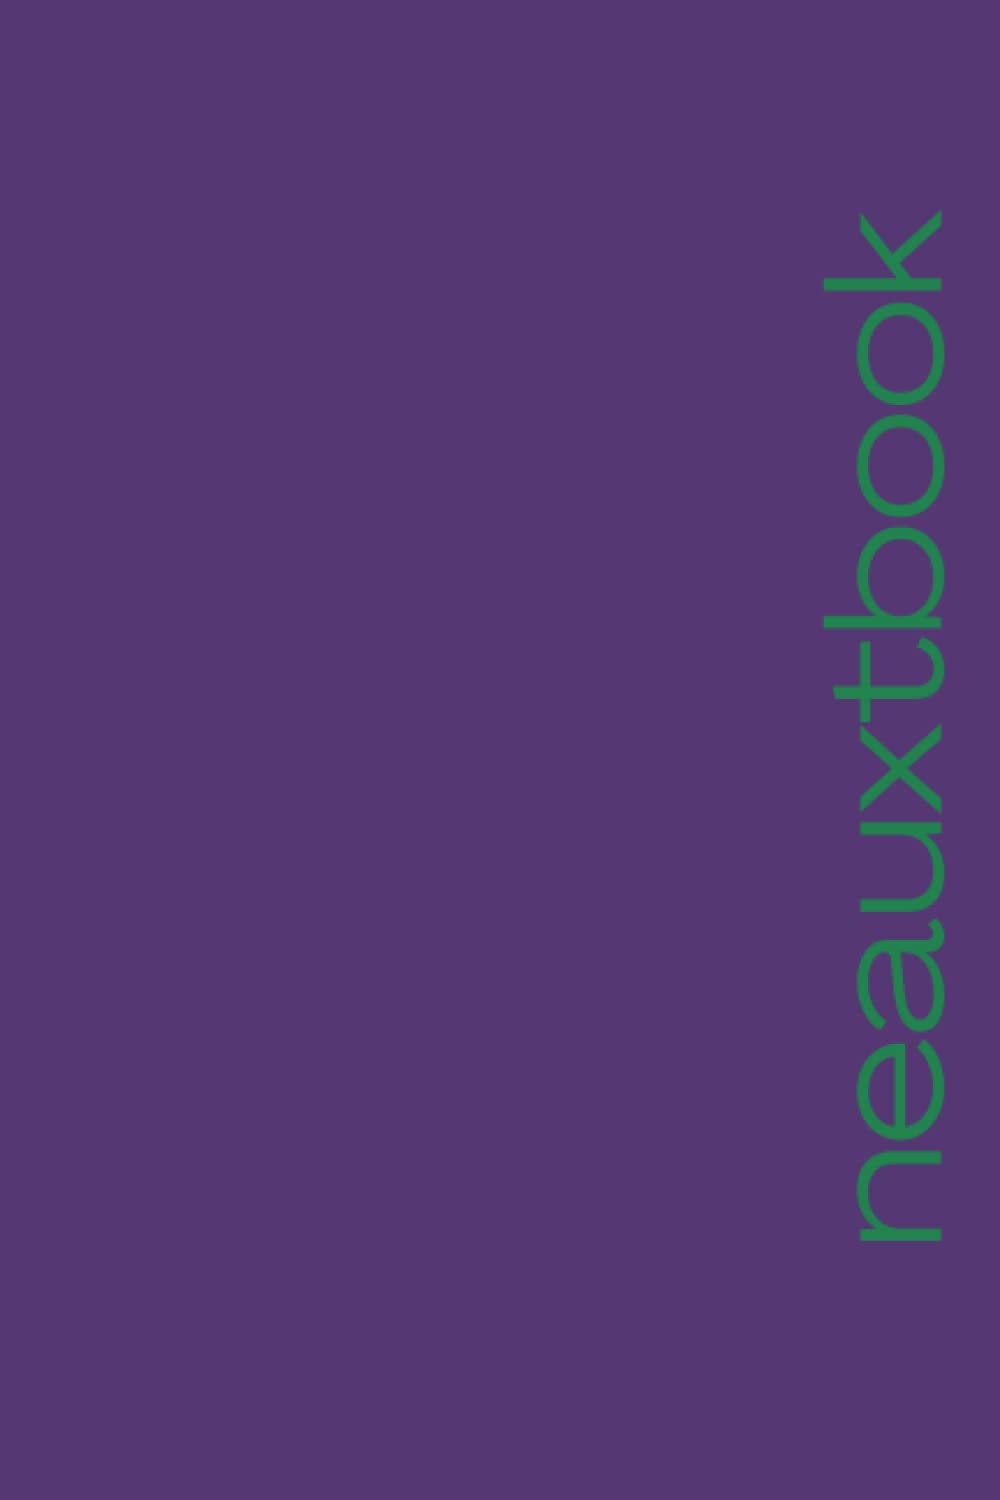 Neauxtbook: Notebook: Purple, Green & Gold Journal